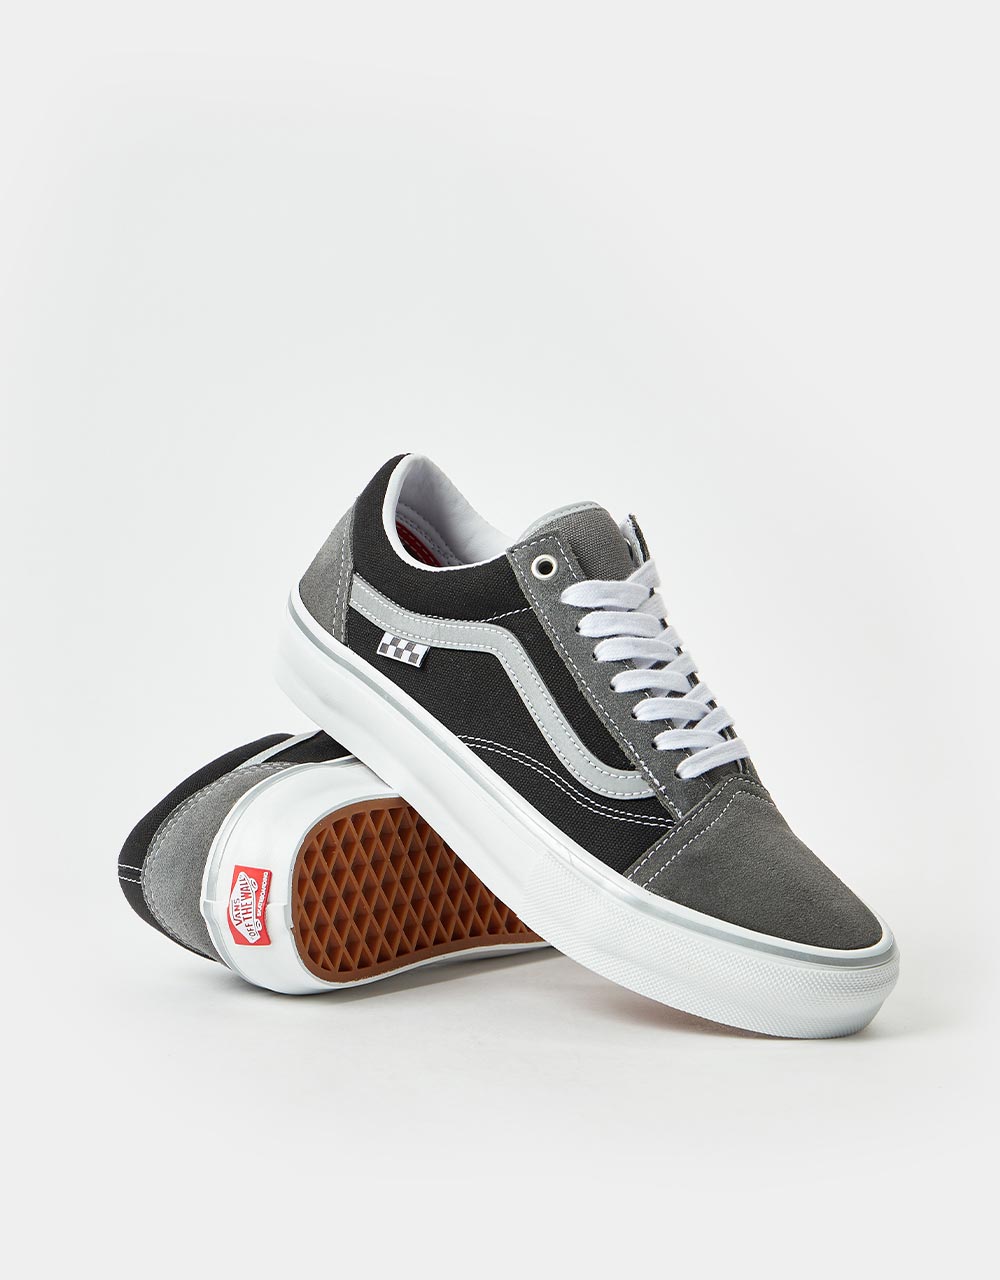 Vans Skate Old Skool Shoes - (Reflective) Black/Grey